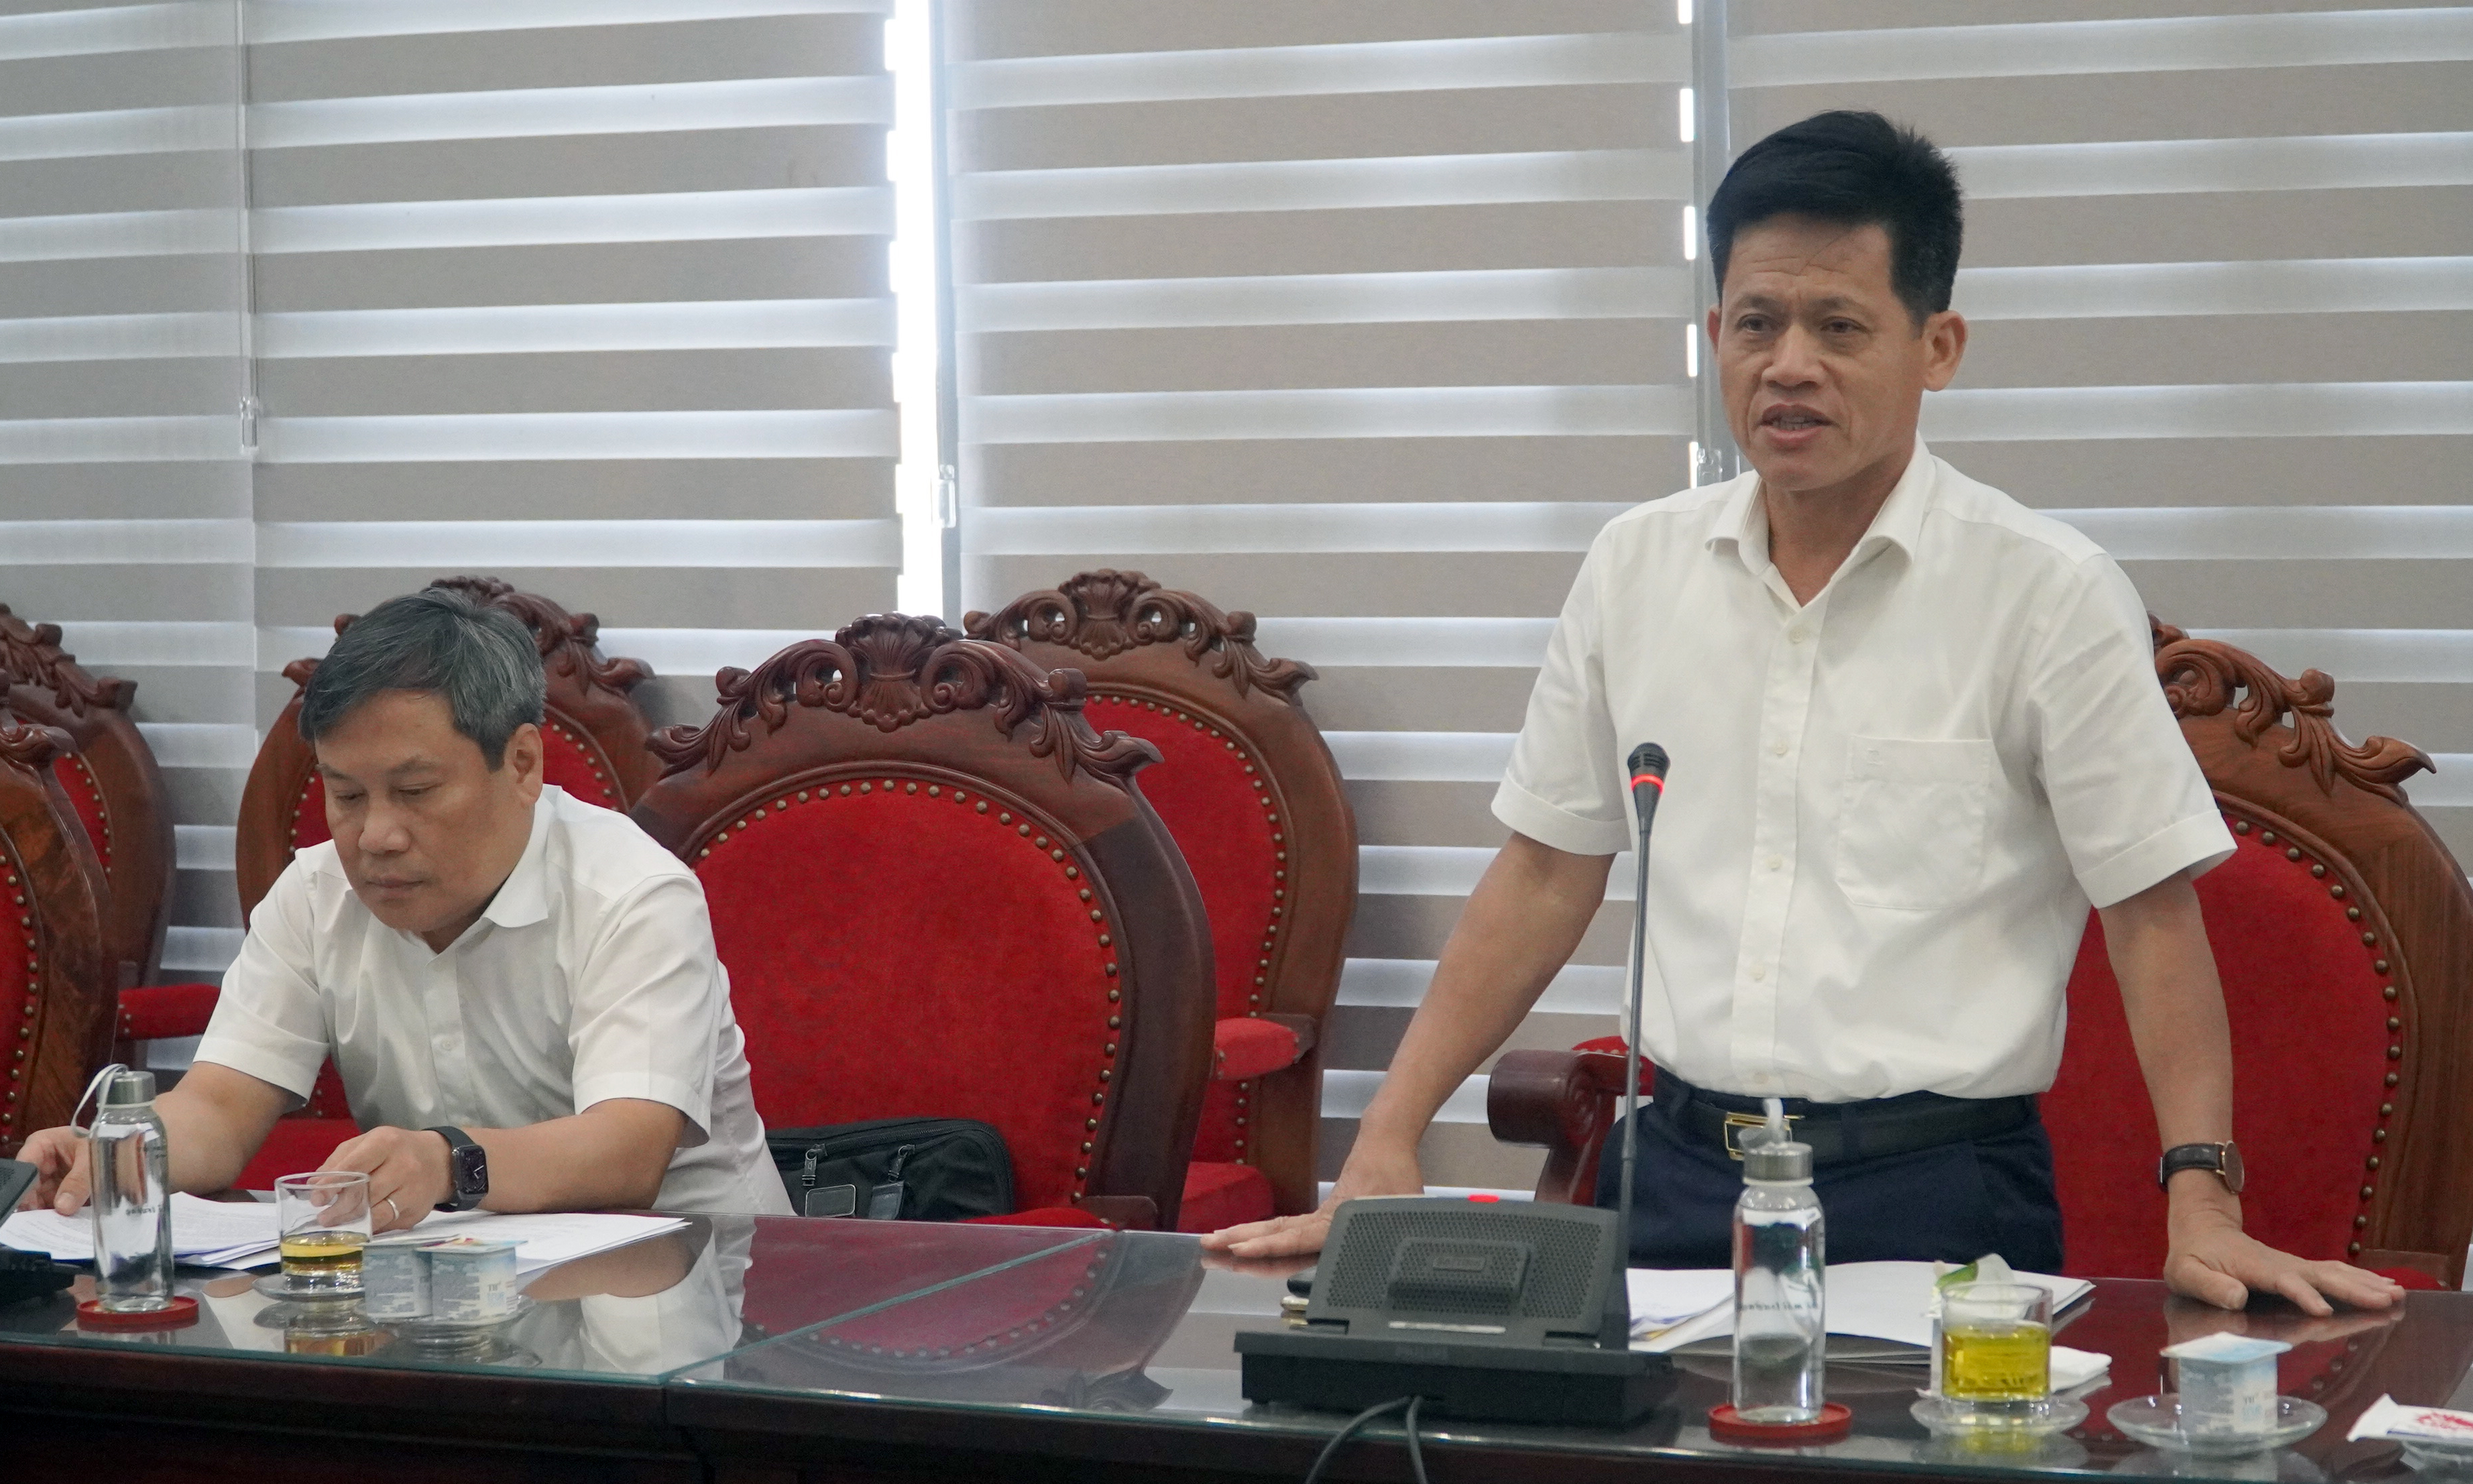 Đồng chí Trưởng ban Dân vận Tỉnh ủy Lê Văn Bảo phát biểu tại buổi làm việc